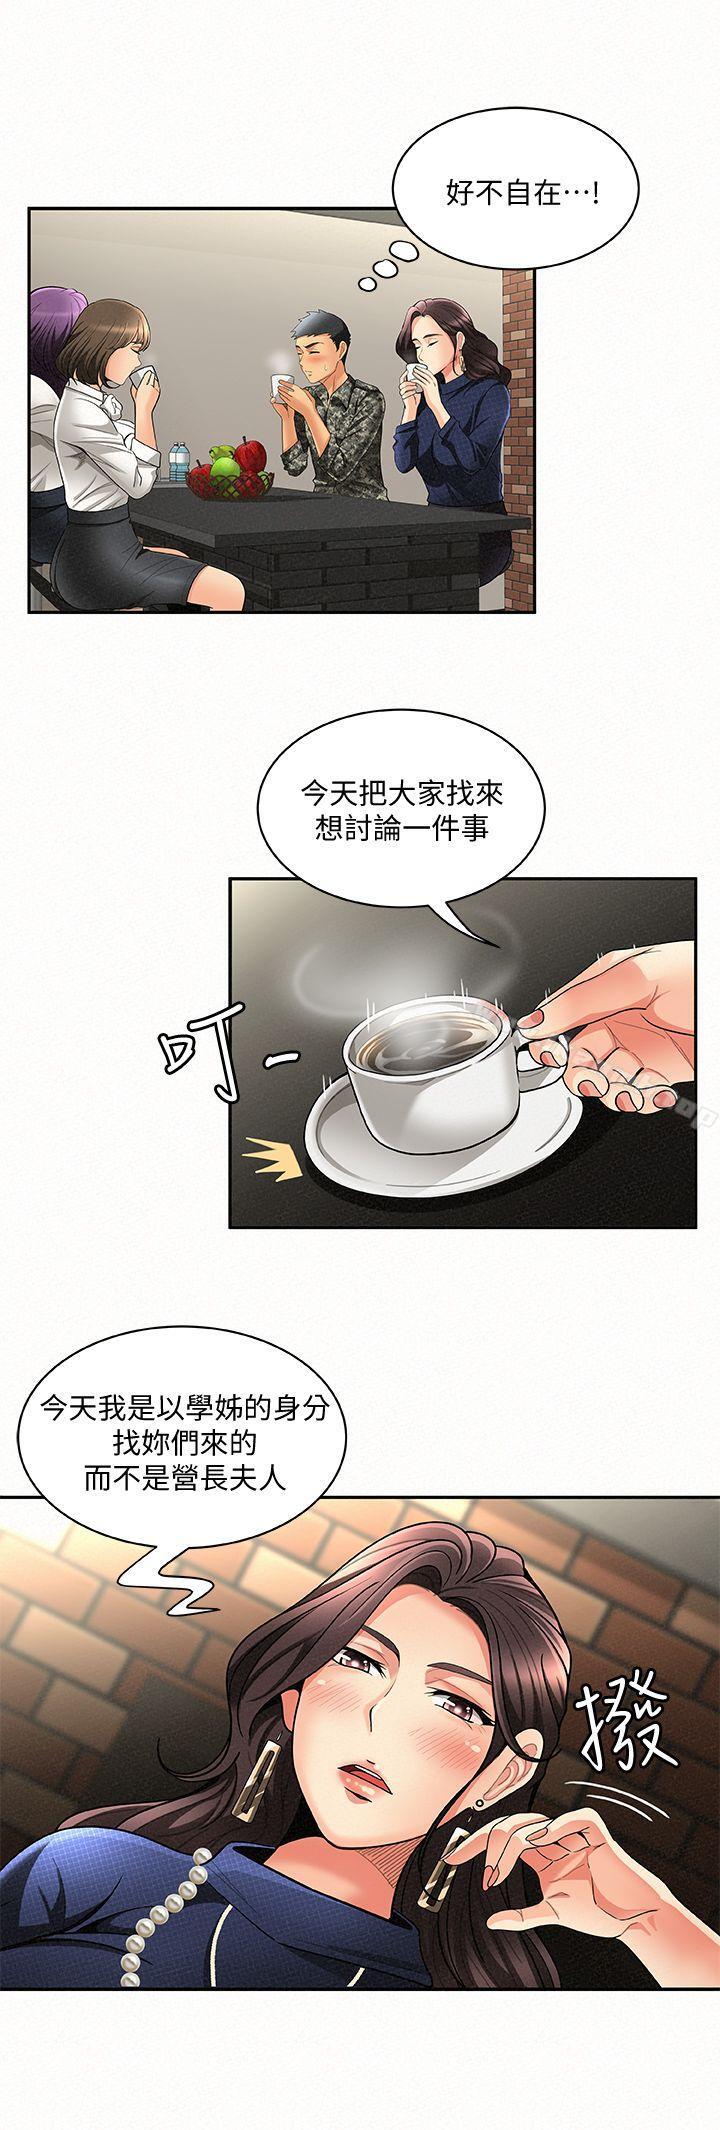 韩国漫画报告夫人韩漫_报告夫人-第3话-想不想嚐嚐其他有夫之妇?在线免费阅读-韩国漫画-第9张图片